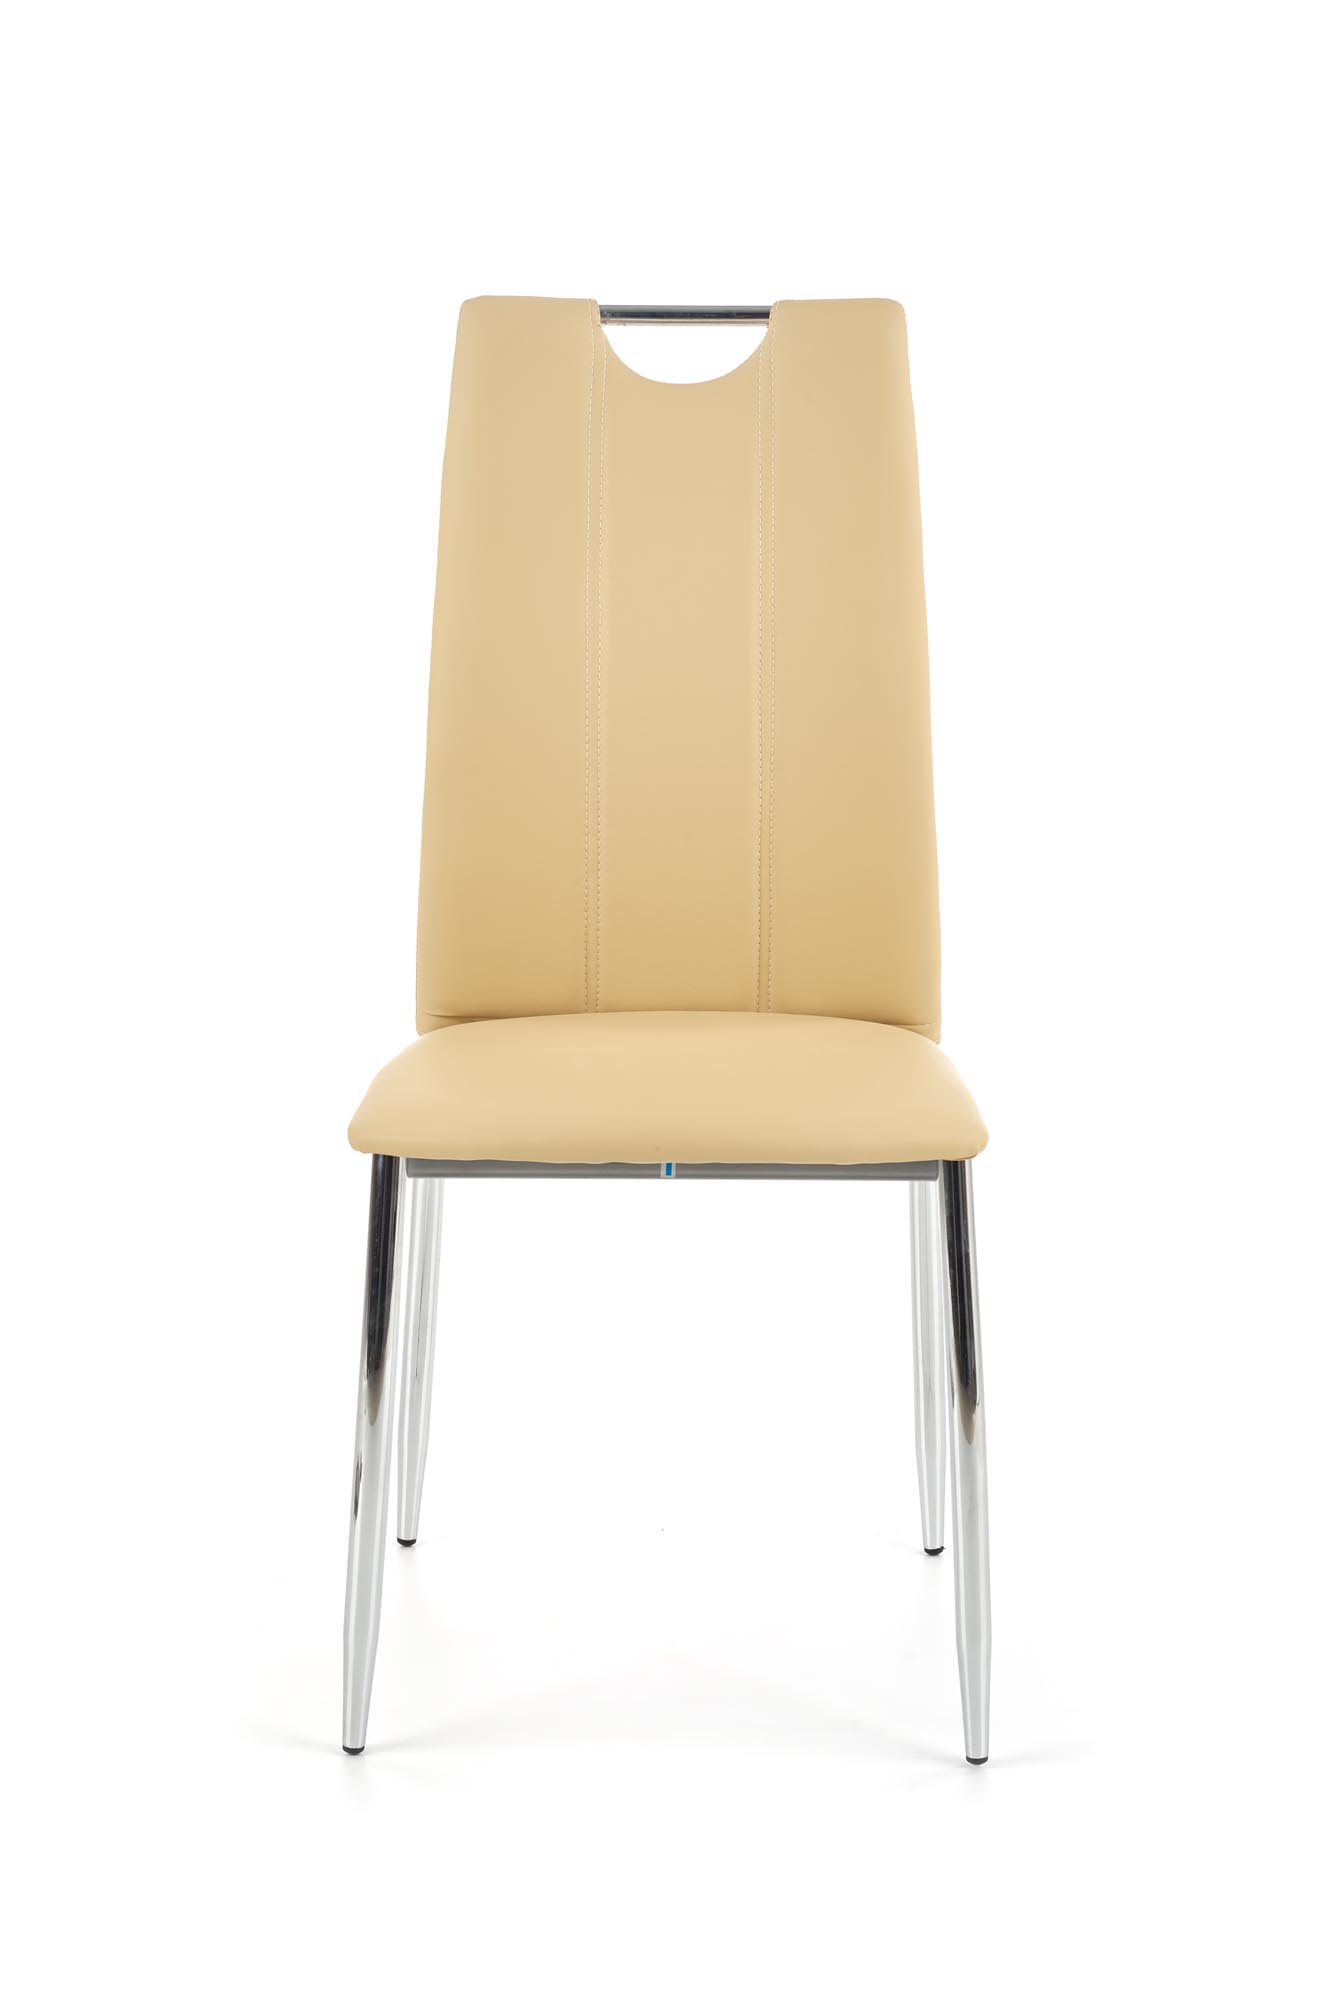 K187 krzesło beżowy k187 krzesło beżowy